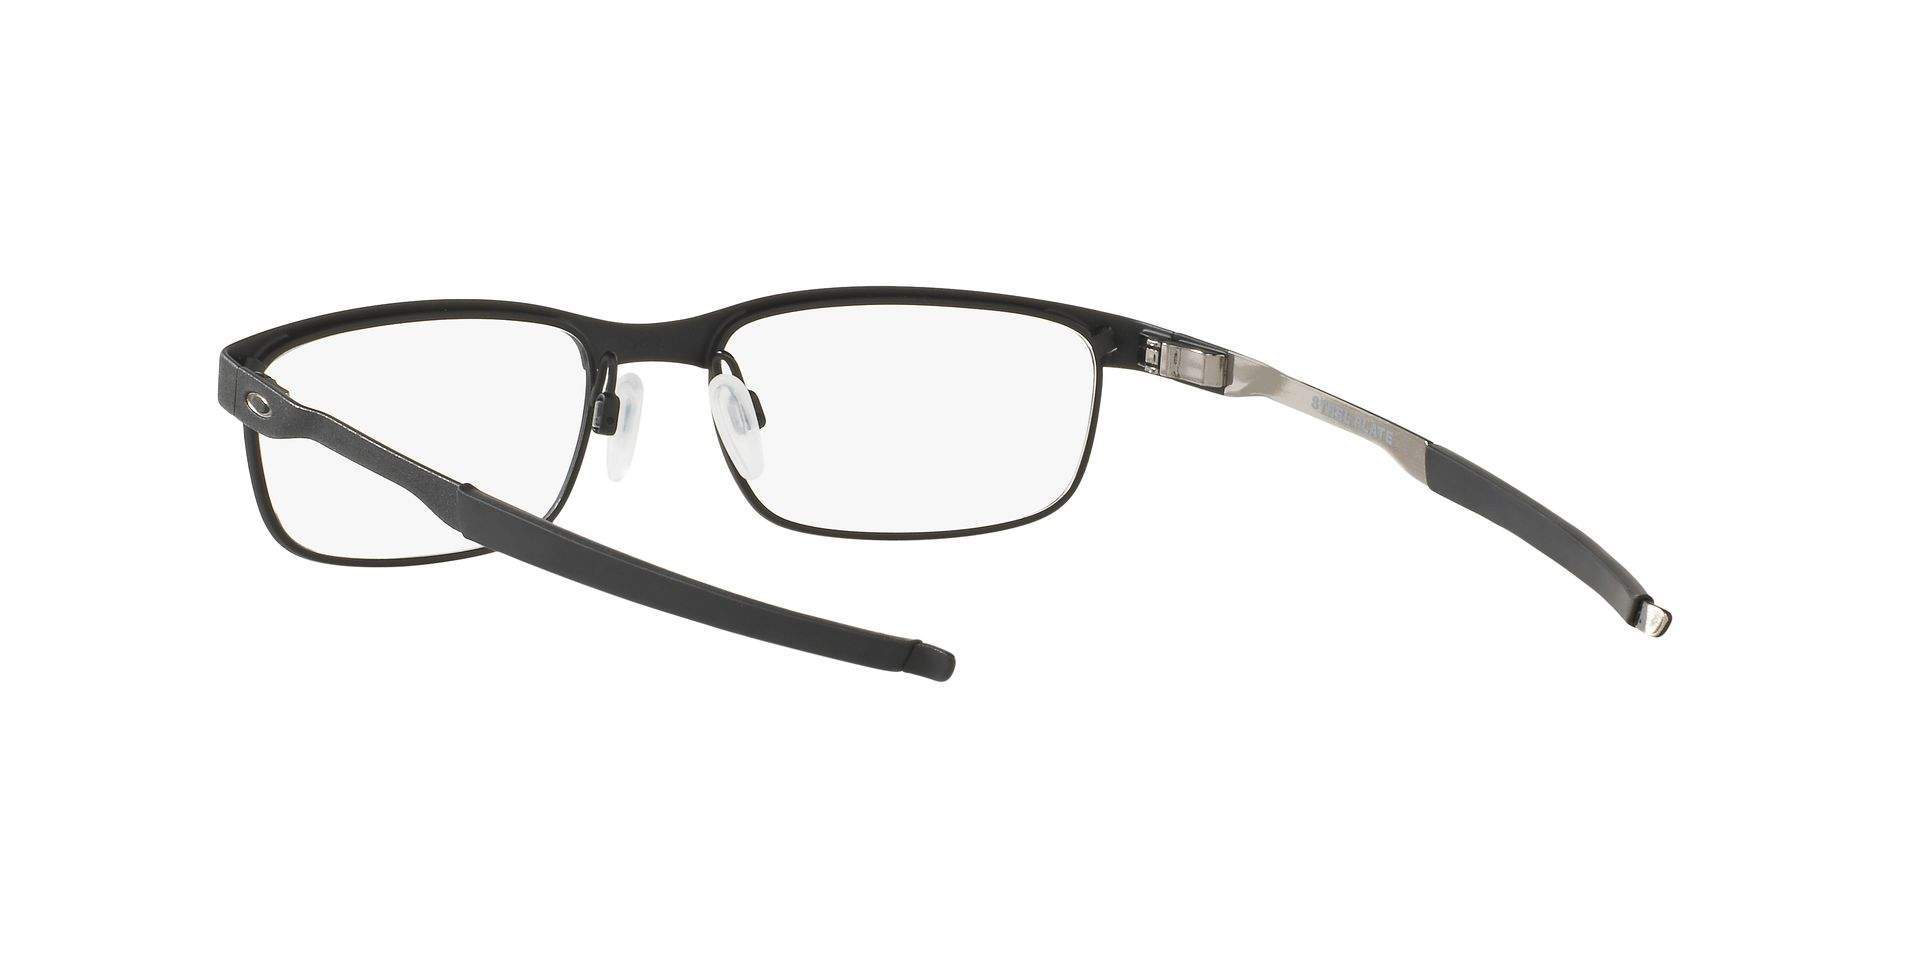 Eyeglasses Oakley Steel plate Black Matte OX3222 01 52-18 Small in ...